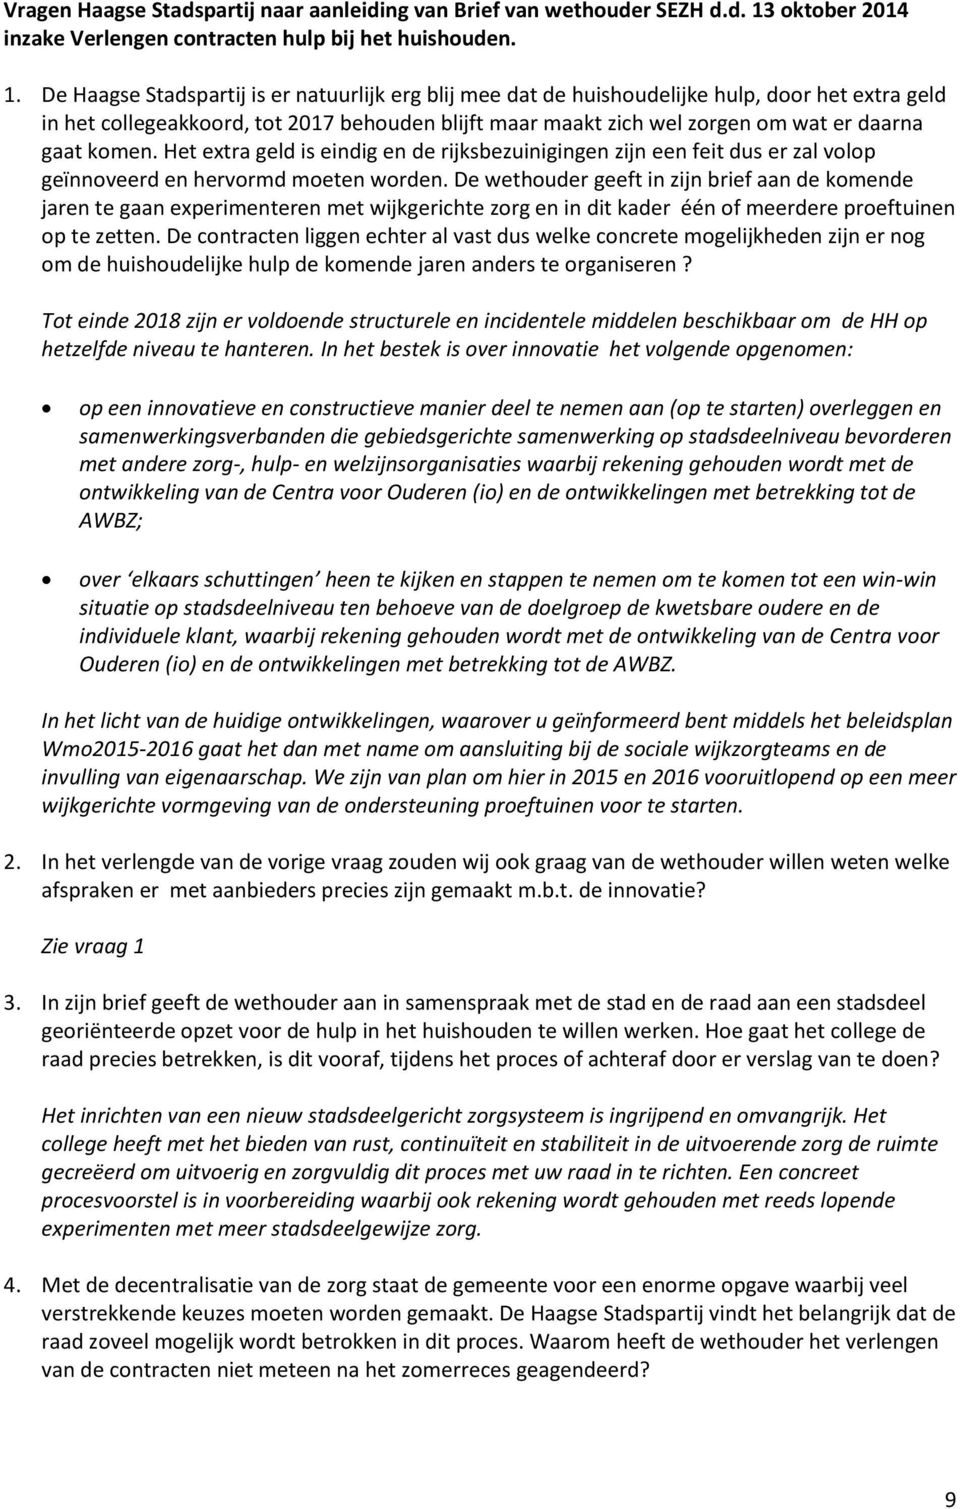 De Haagse Stadspartij is er natuurlijk erg blij mee dat de huishoudelijke hulp, door het extra geld in het collegeakkoord, tot 2017 behouden blijft maar maakt zich wel zorgen om wat er daarna gaat